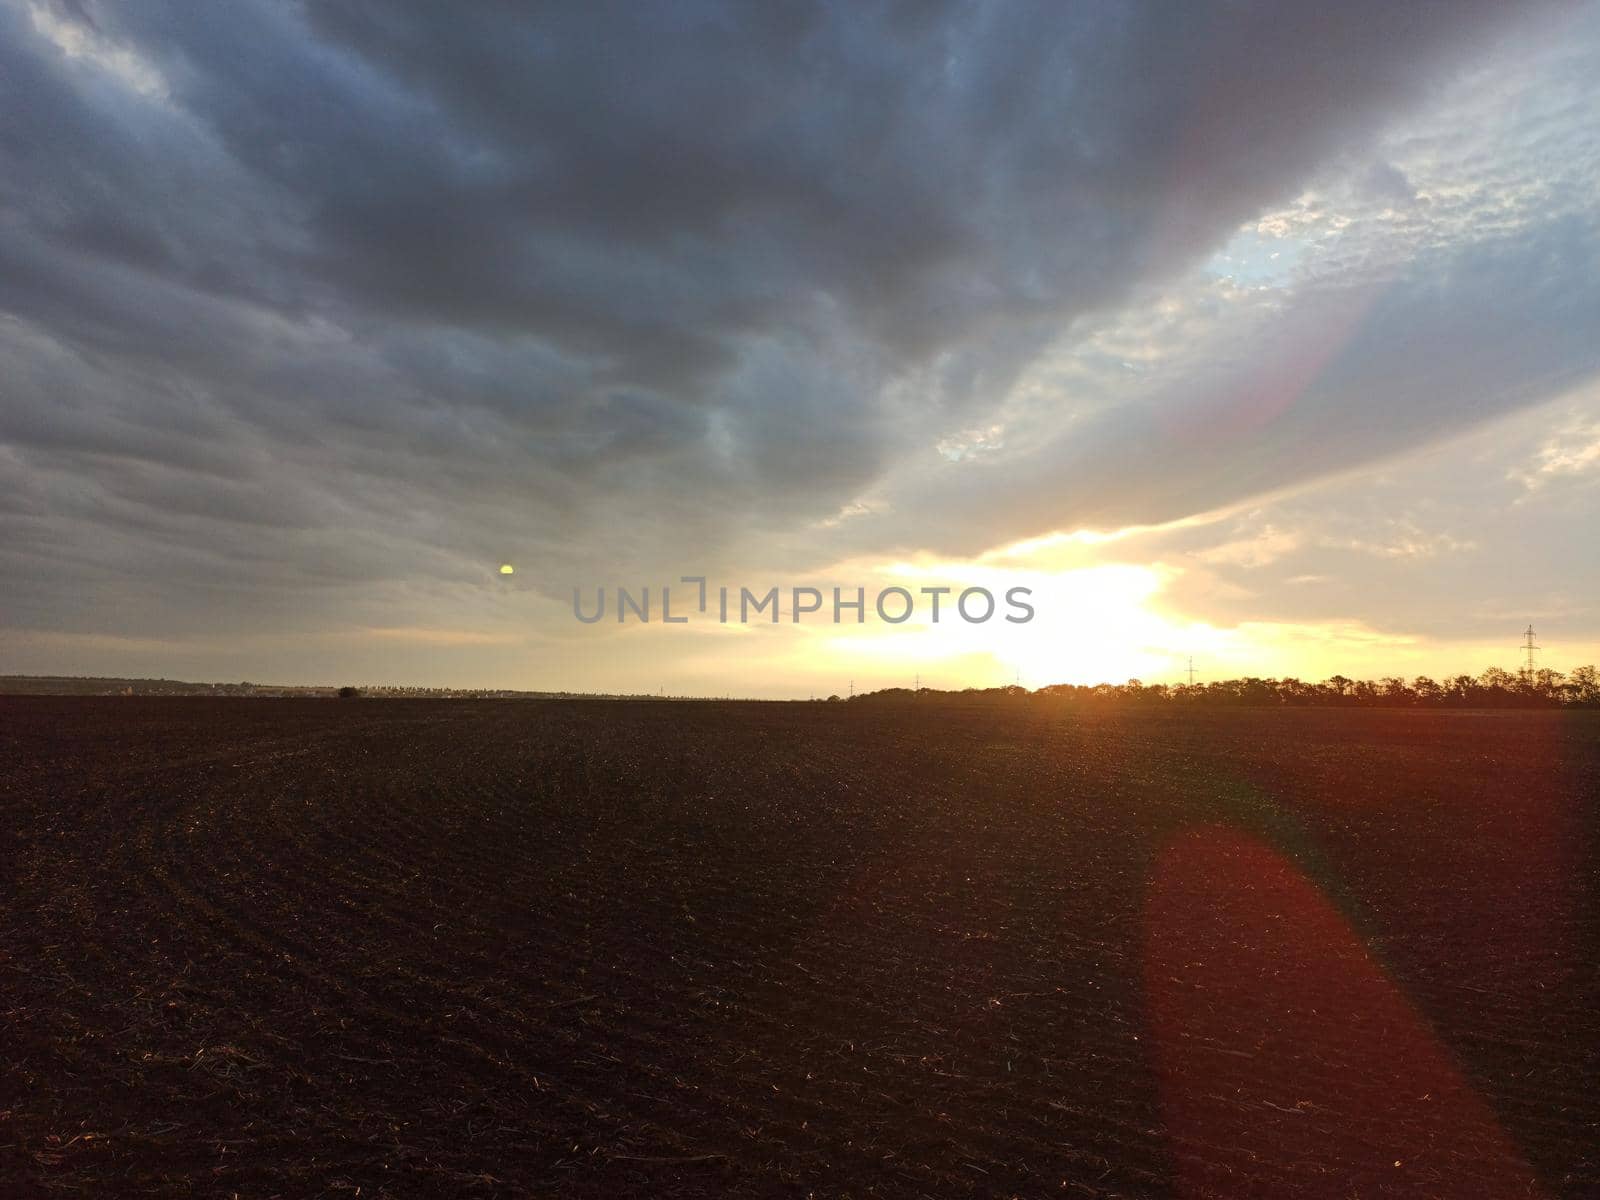 Sunset over a plowed field. Summer evening at summer